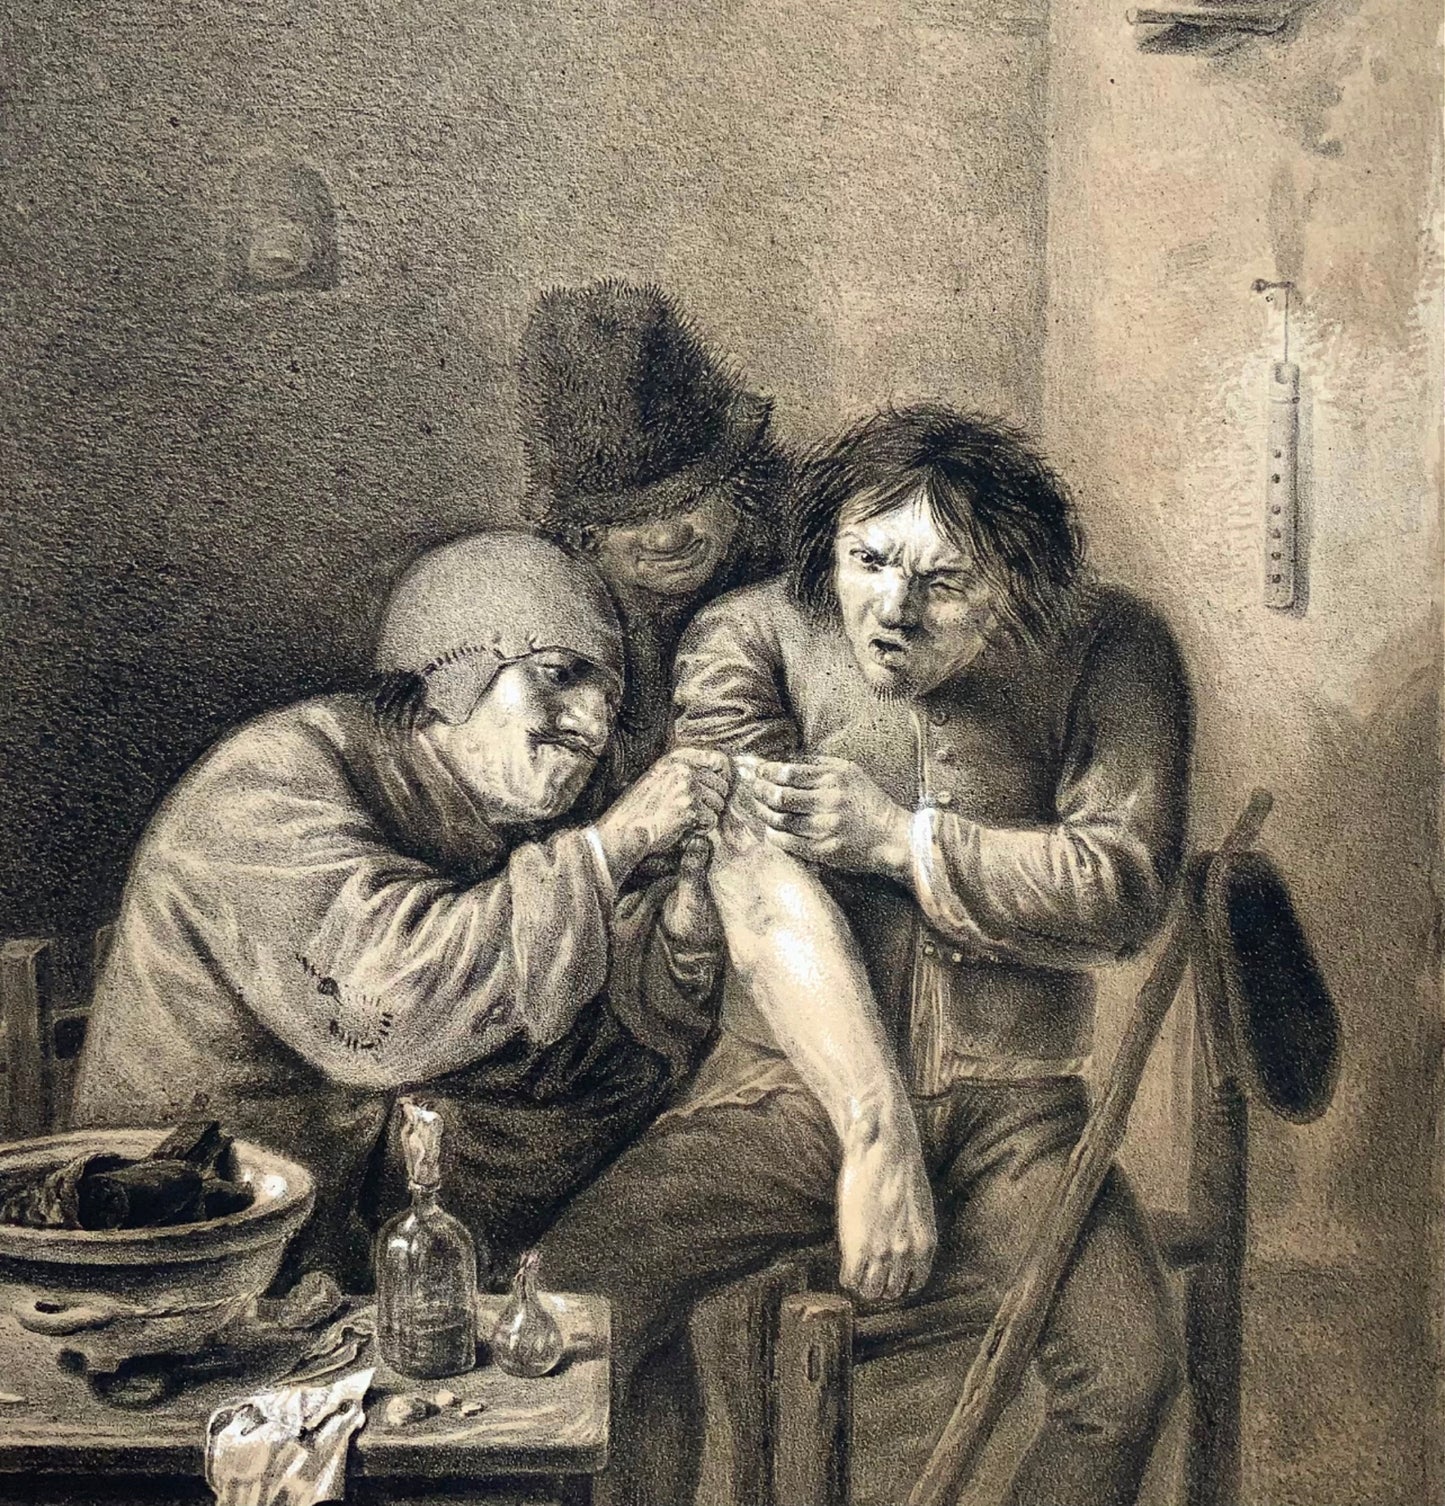 1810c Médecine, Chirurgien, N. Strixner d'après A. Brouwer, incunables de lithographie 